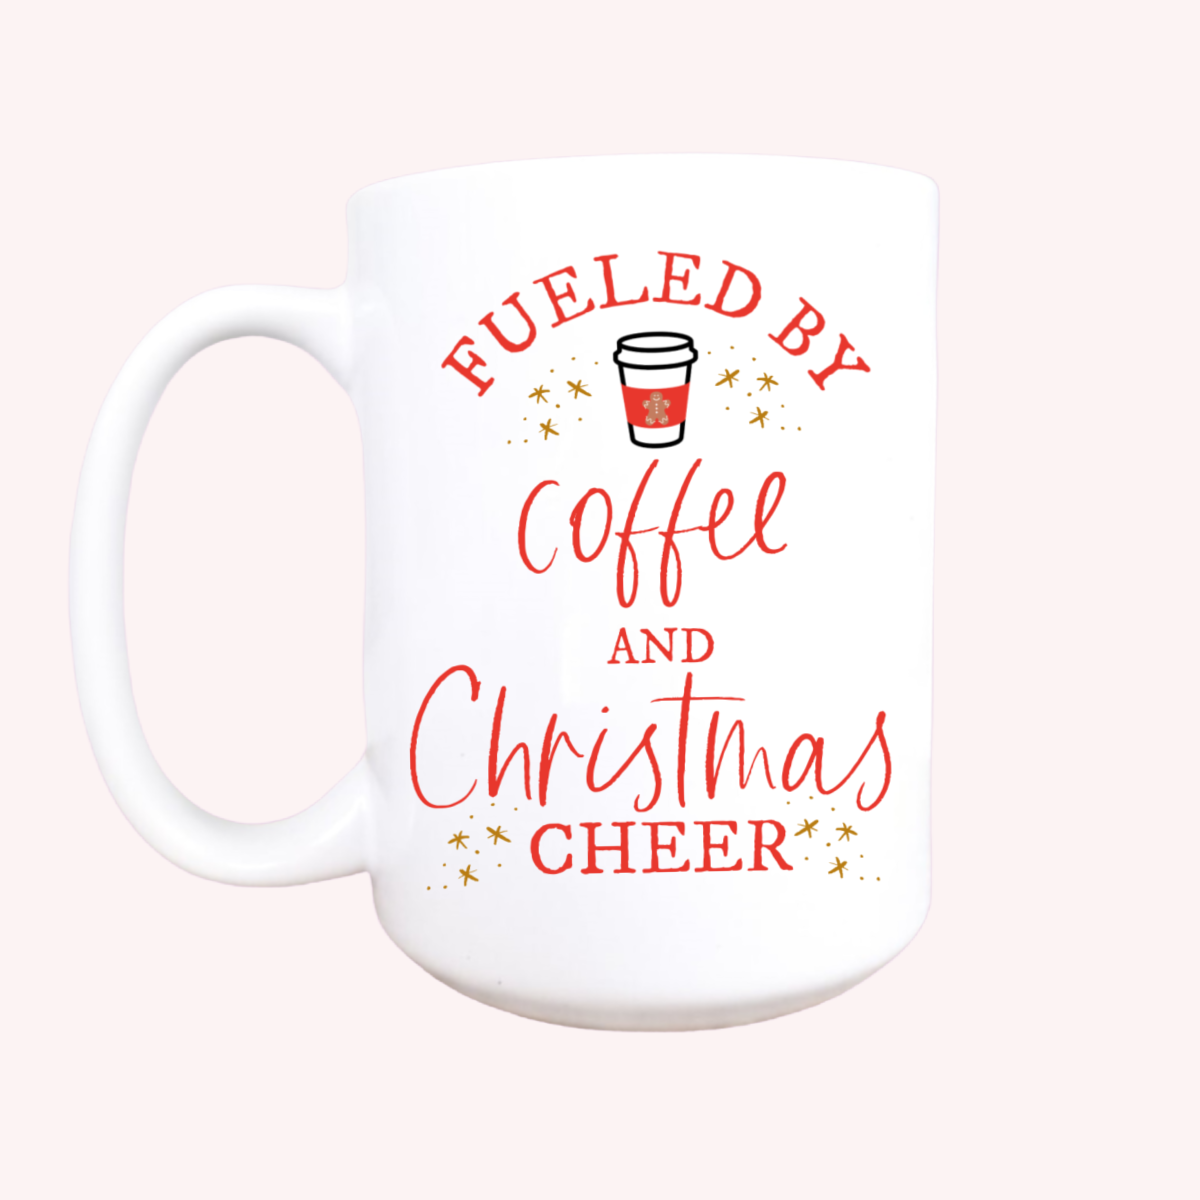 Coffee and Christmas cheer mug, Christmas mug, Christmas